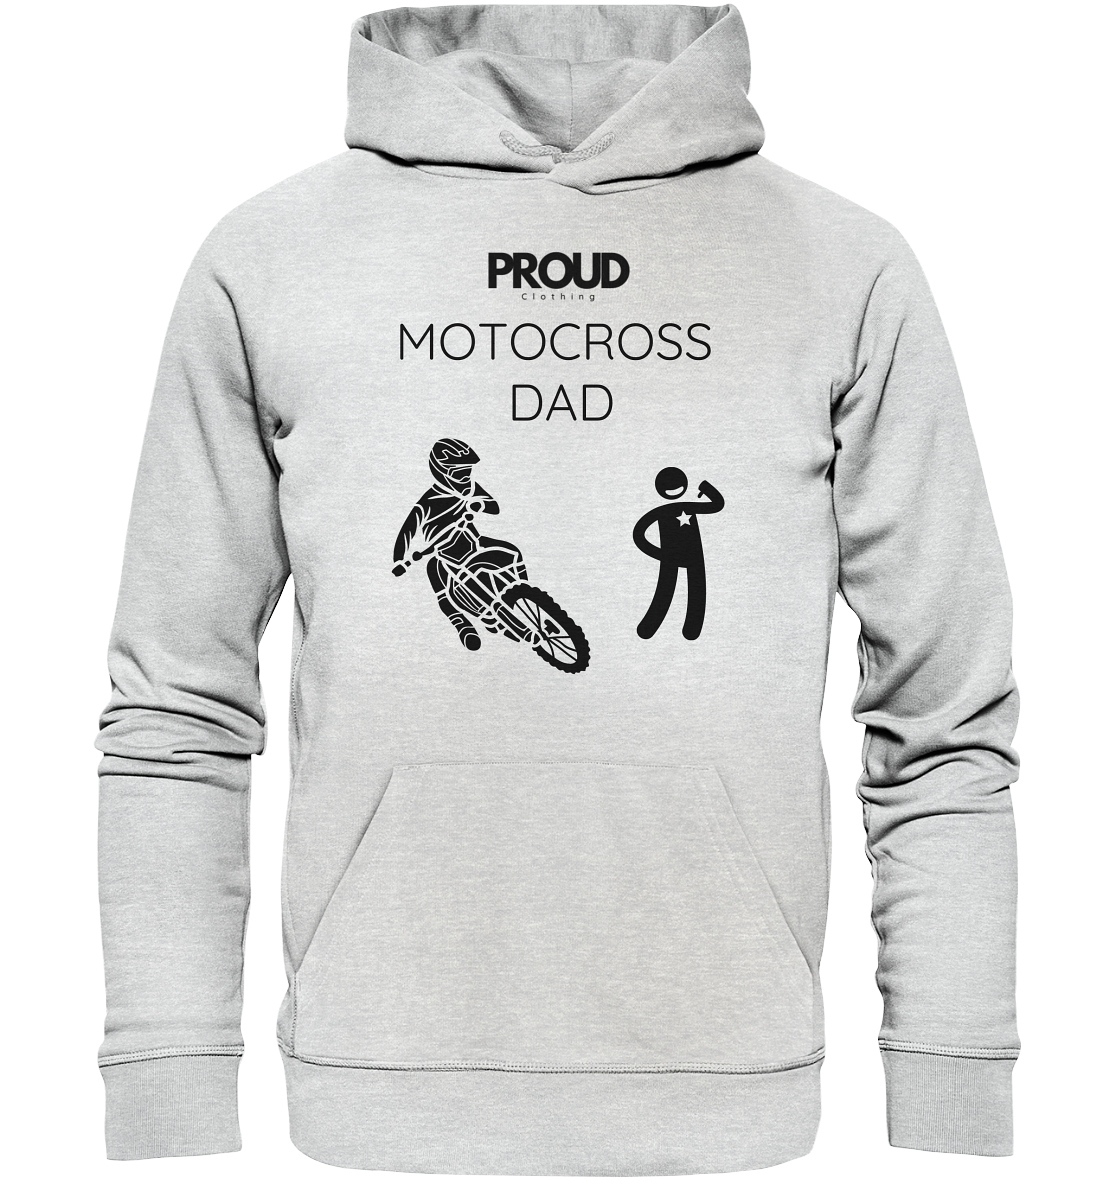 Motocross DAD - Premium Unisex Hoodie